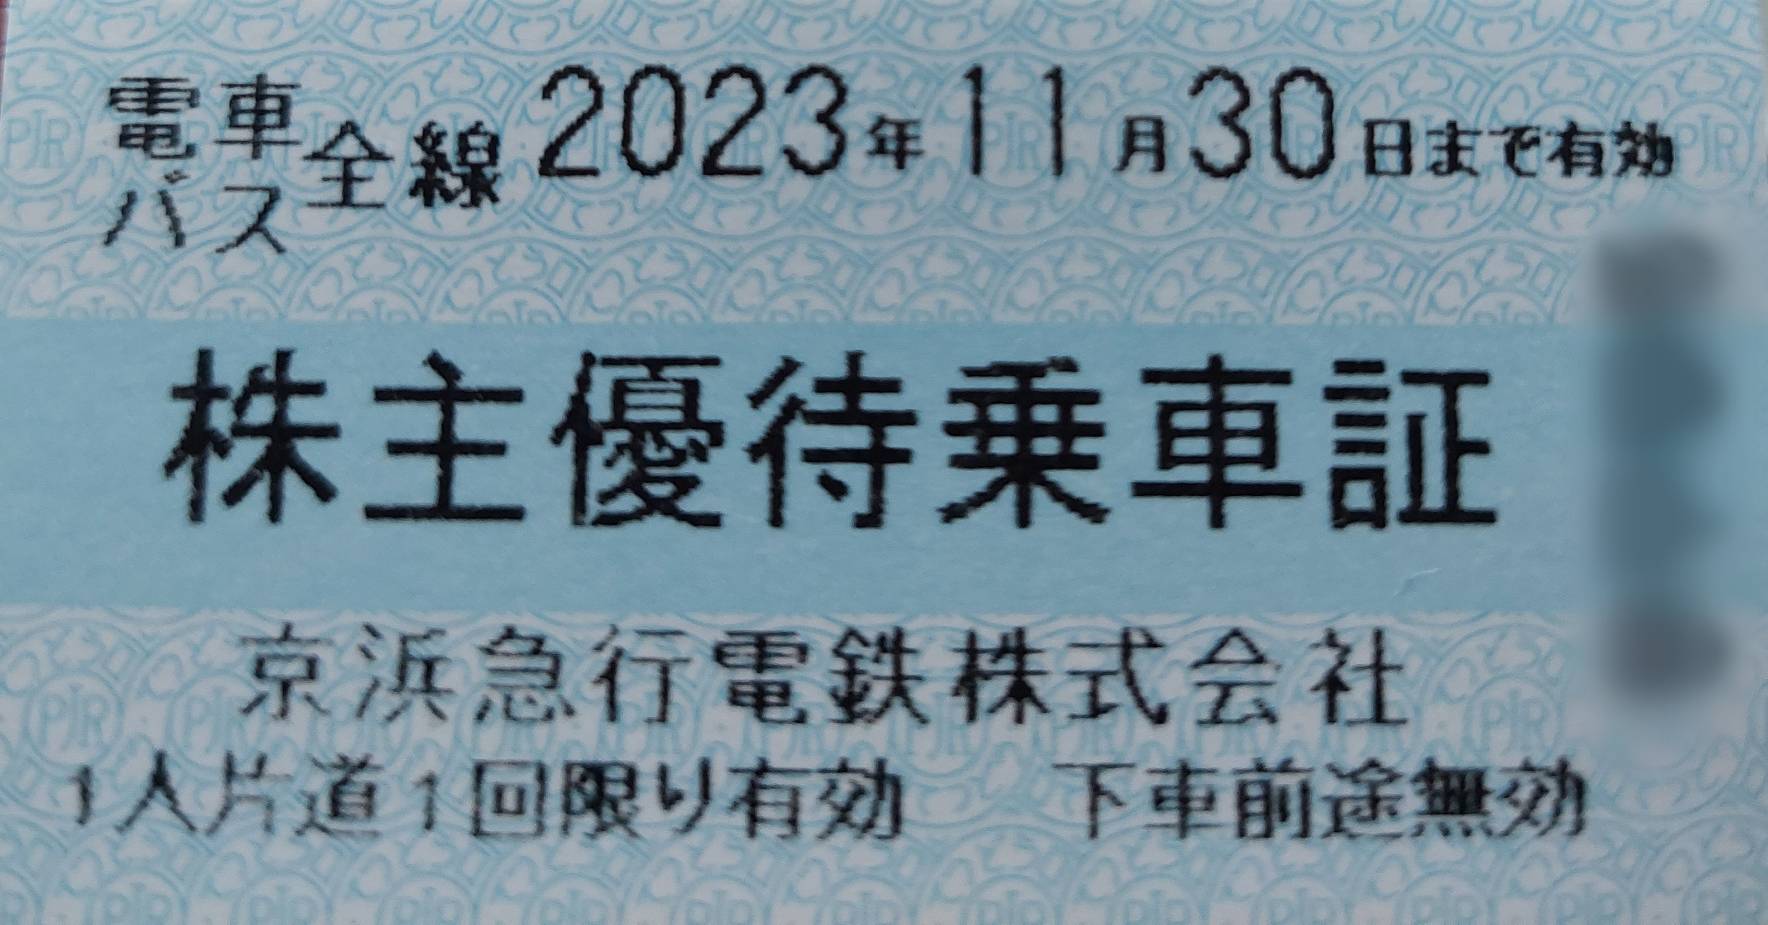 京王 株主優待 電車全線パス 1枚 2023.11.31まで有効